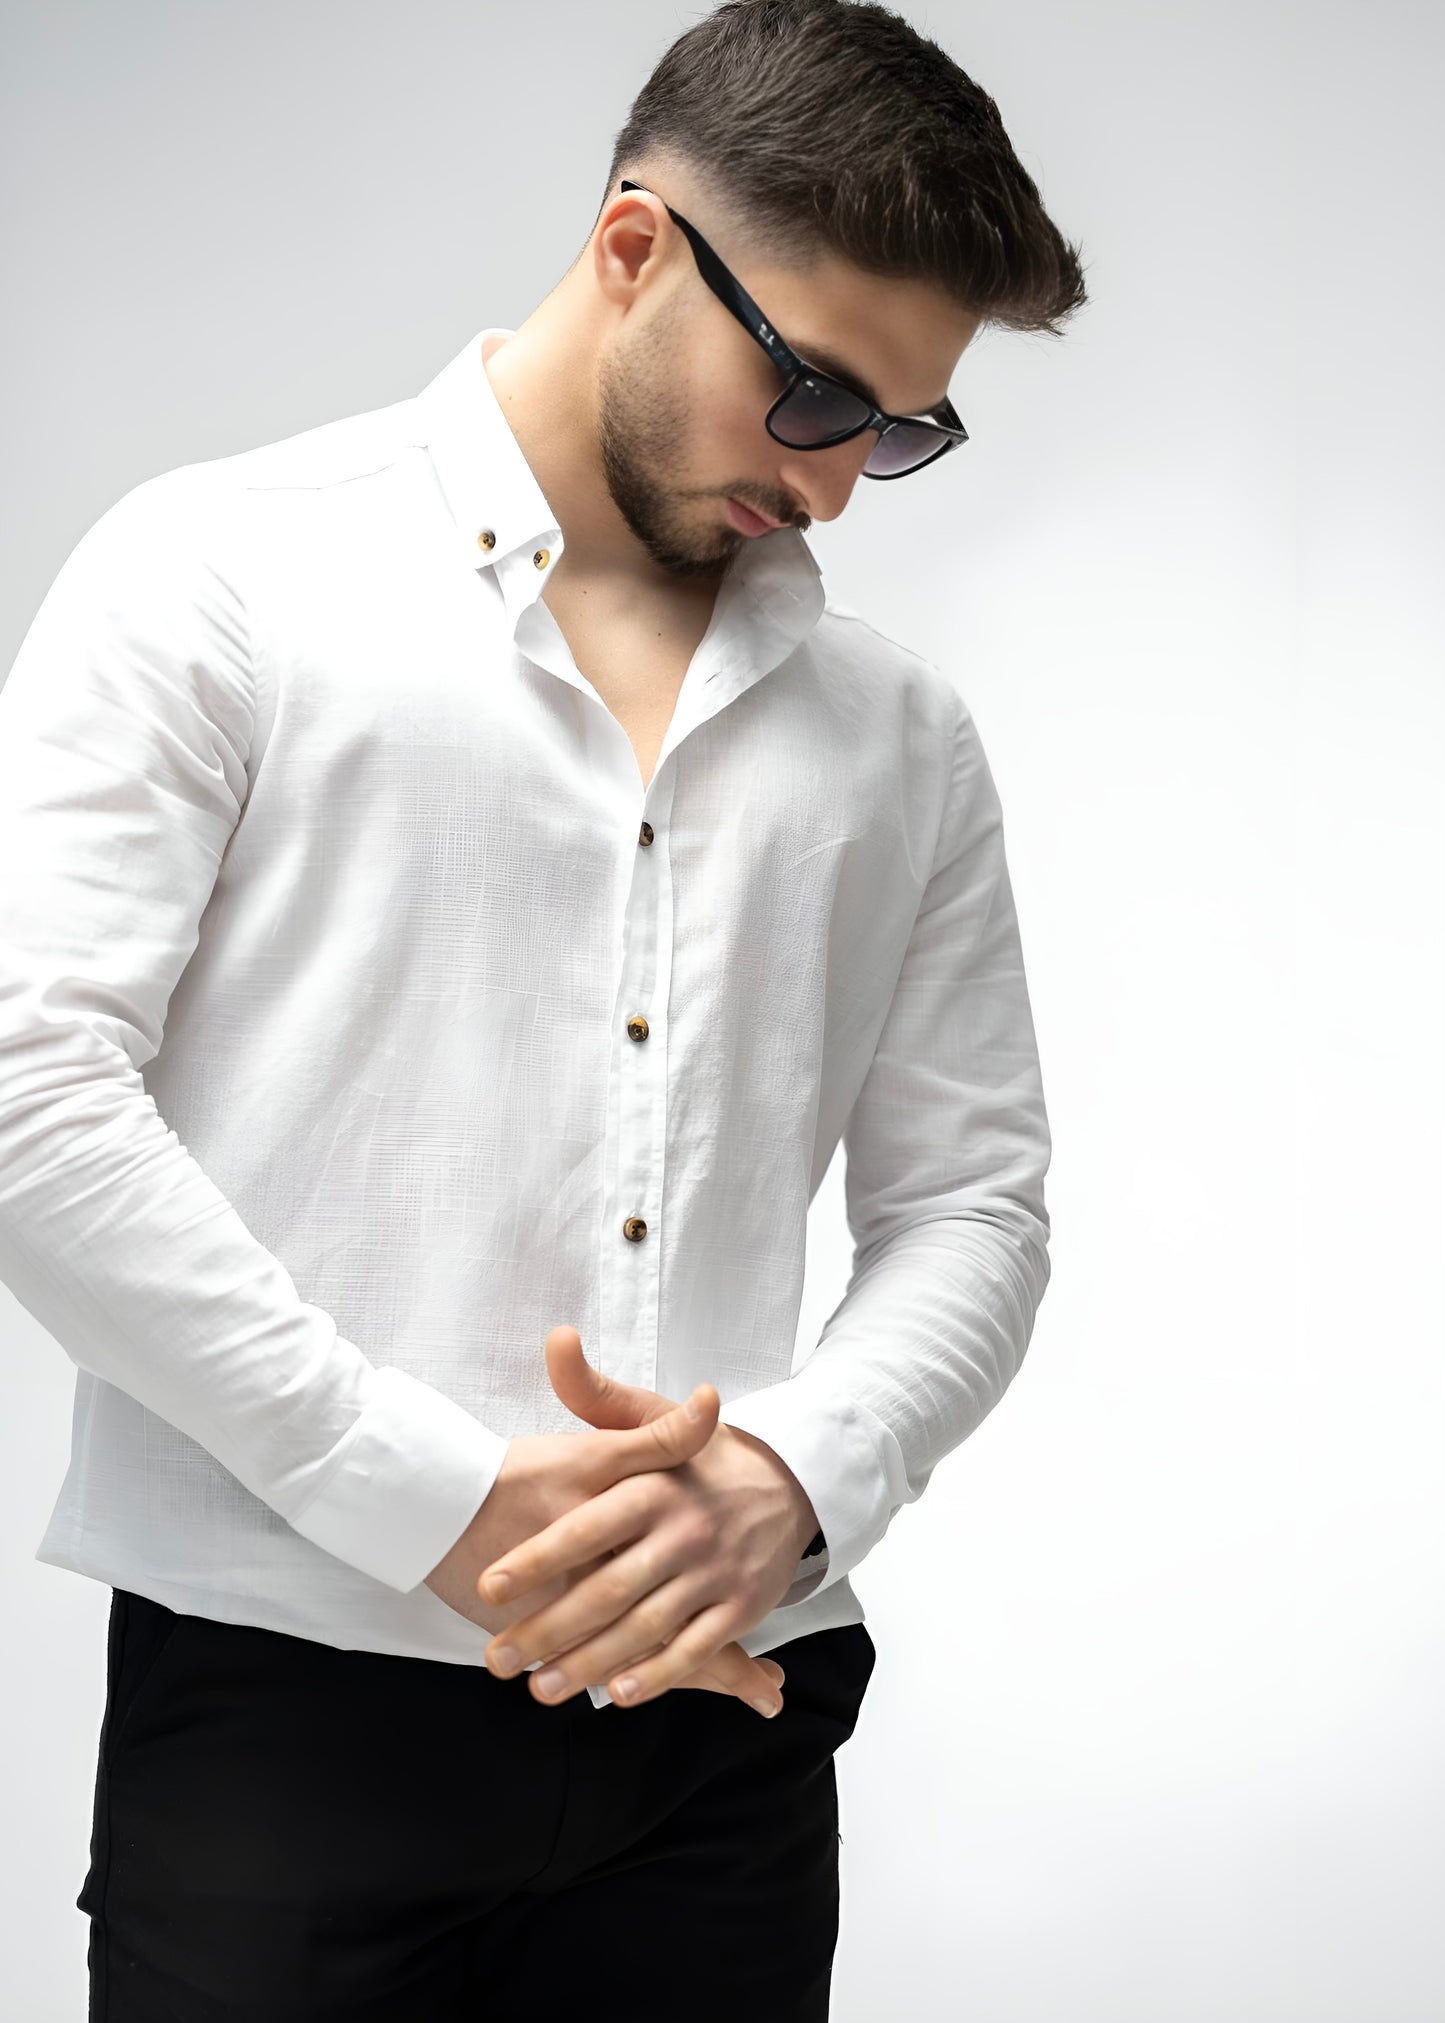 Легка котонова сорочка білого кольору з класичним коміром  M L XL XXL 01-22-705